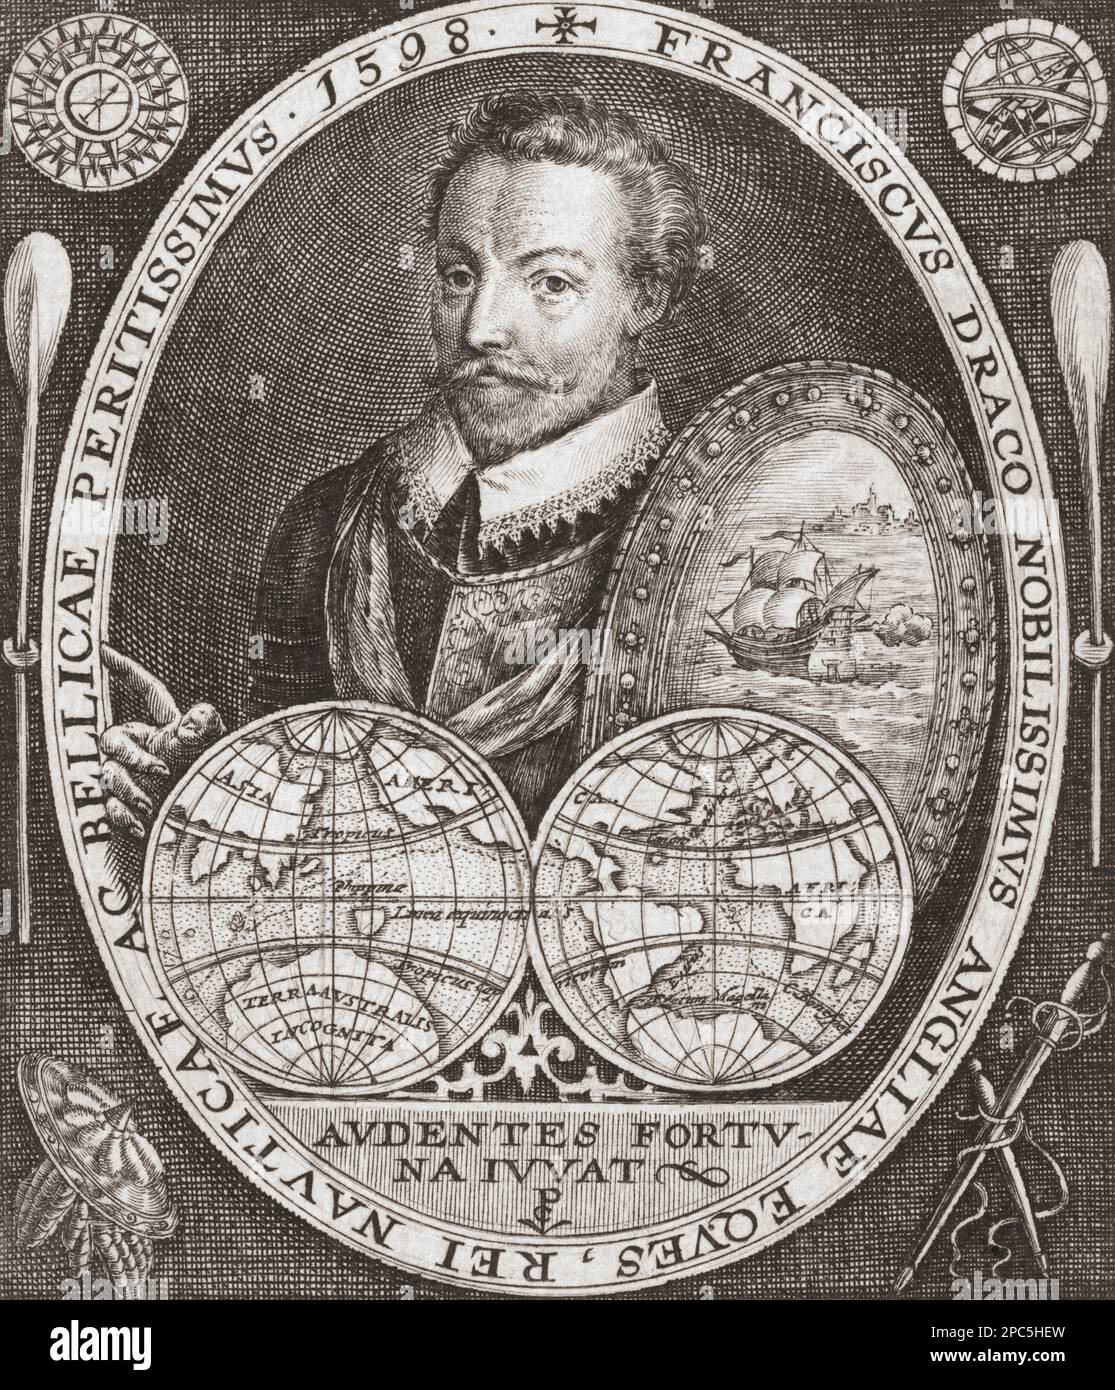 Sir Francis Drake, 1540 – 1596, capitano inglese, privato, navigatore, slaver, e politico. Circumnavigò il globo in un solo viaggio tra il 1577 e il 1580. Dopo un'incisione di Jodocus Hondius. Foto Stock